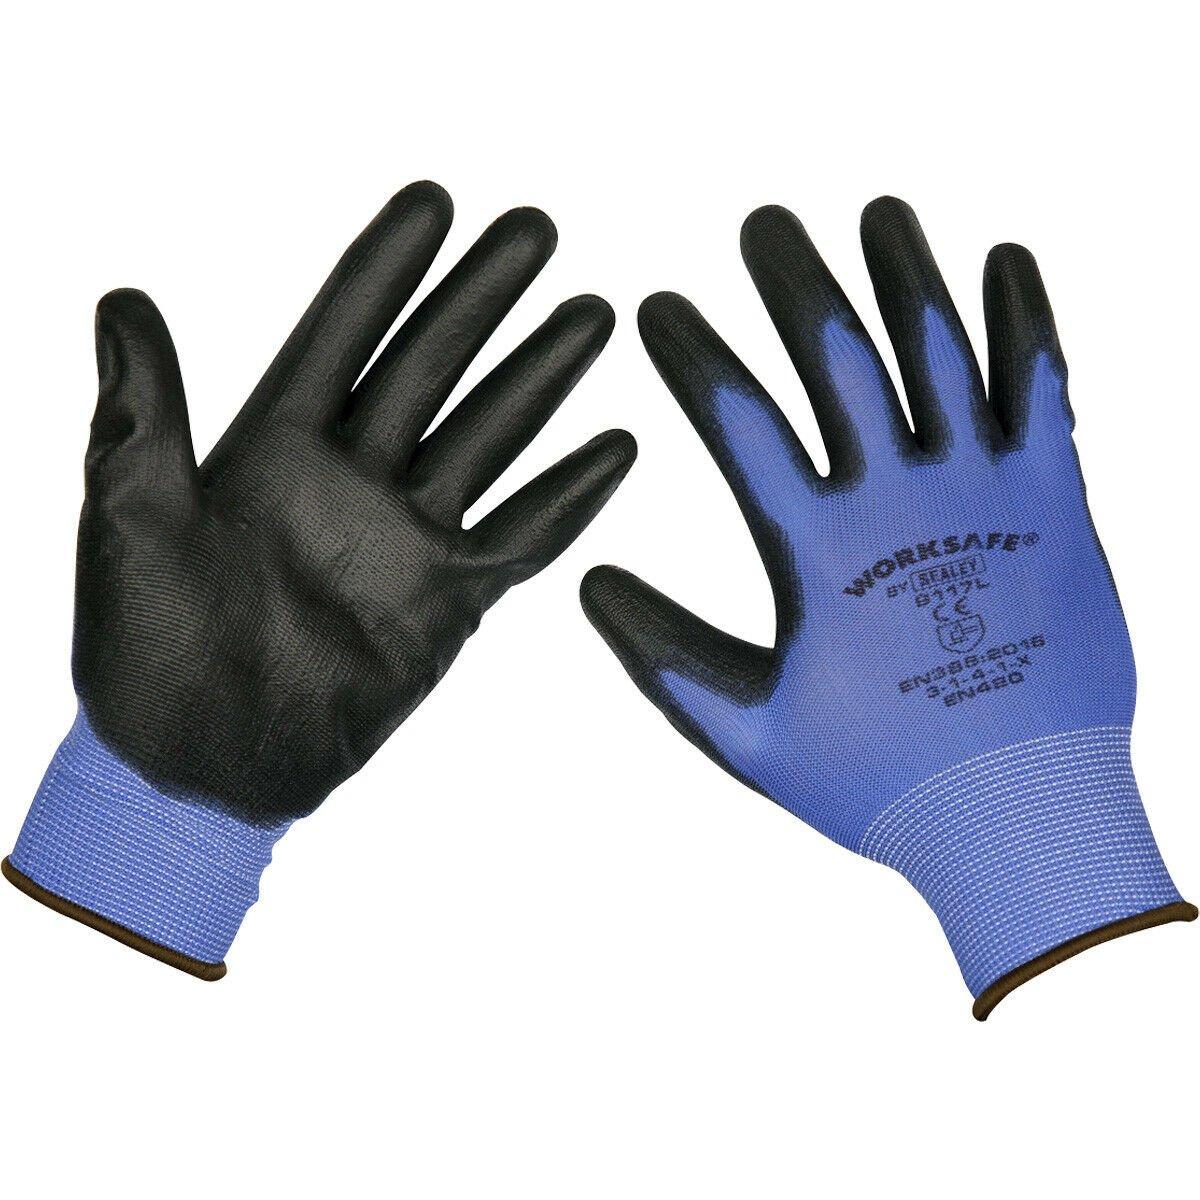 6 пар легких рабочих перчаток с точным захватом, больших размеров, на эластичном запястье Loops, мультиколор перчатки рабочие с пвх покрытием 1 3 6 12 пар